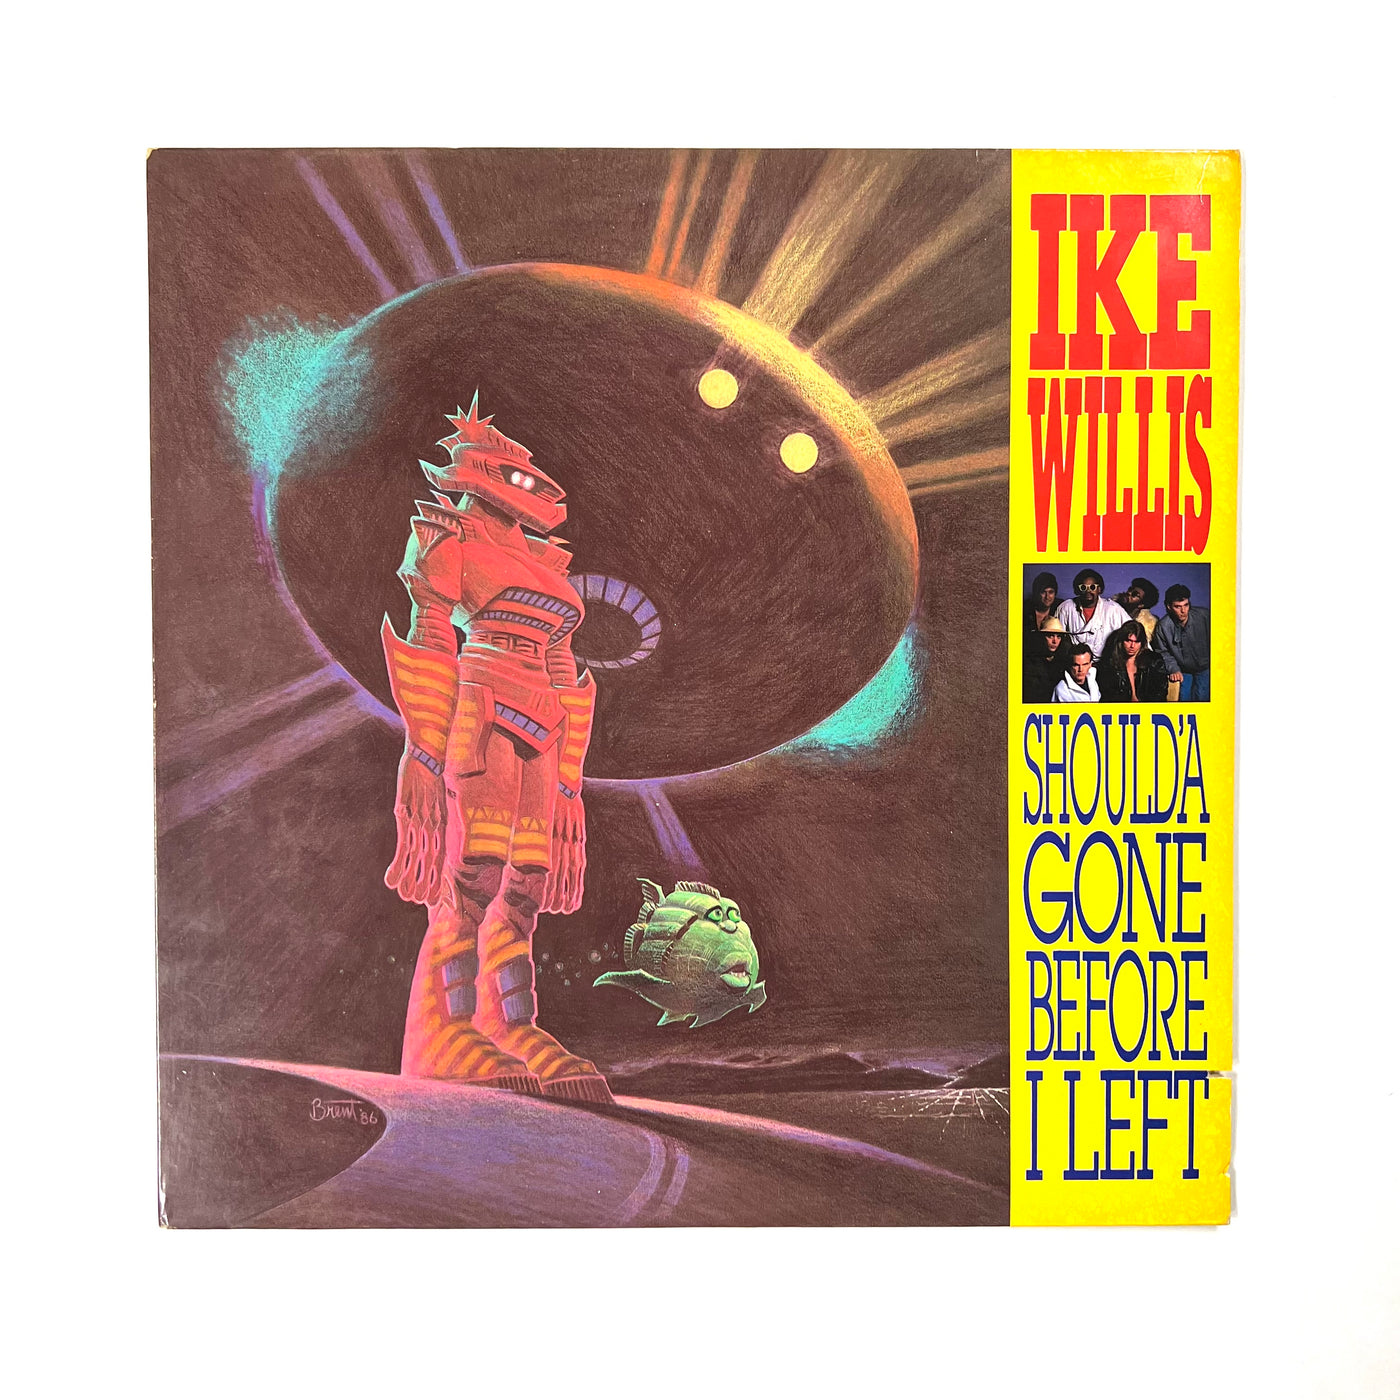 Ike Willis - Should'a Gone Before I Left